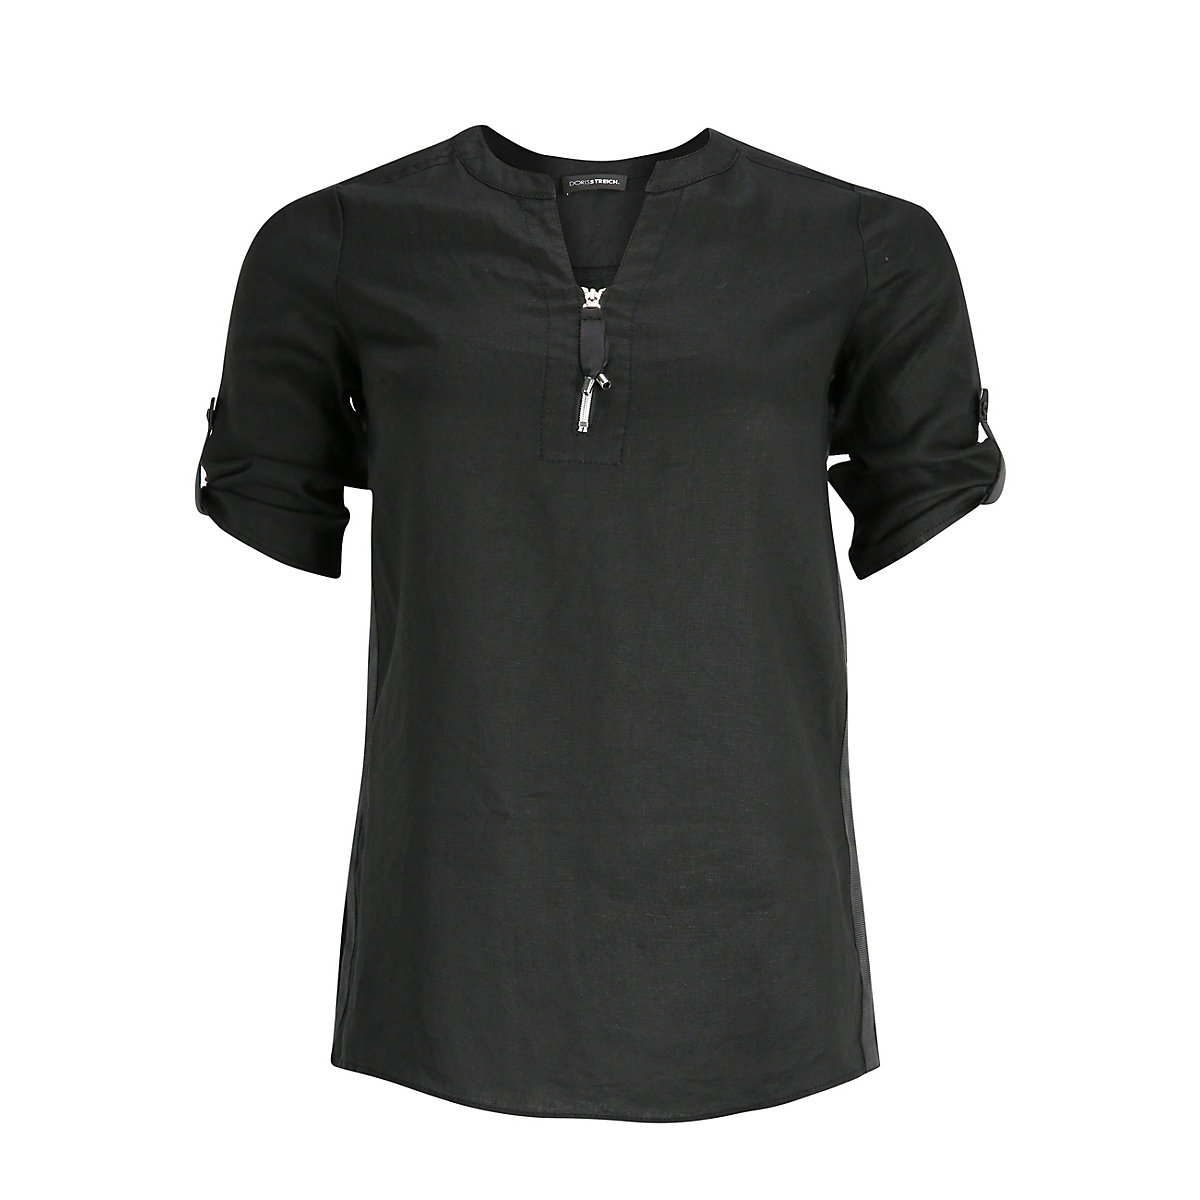 Doris Streich Hemdbluse Leinen-Bluse mit Reißverschluss Langarmblusen schwarz